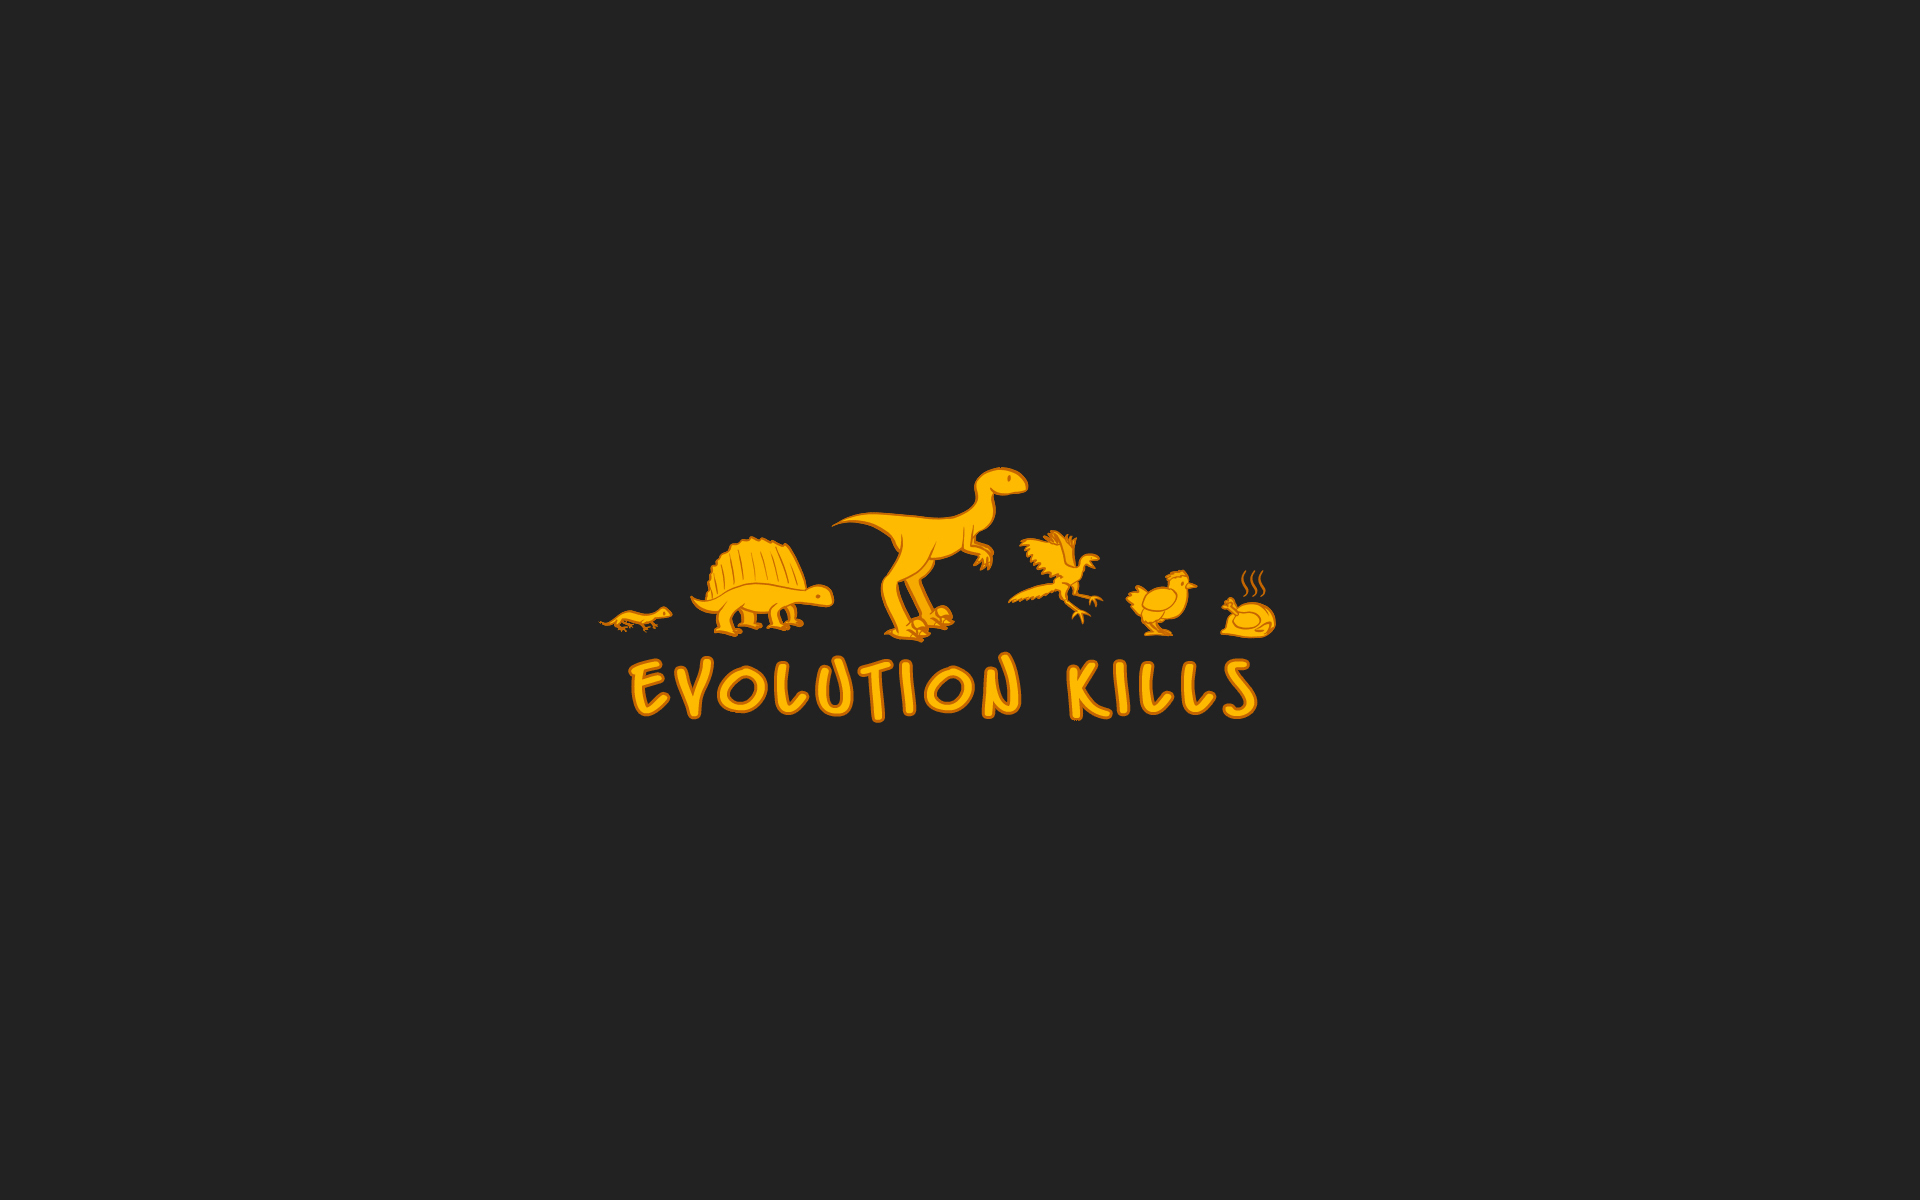 evolution kills art HD Wallpaper of Art Fantasy